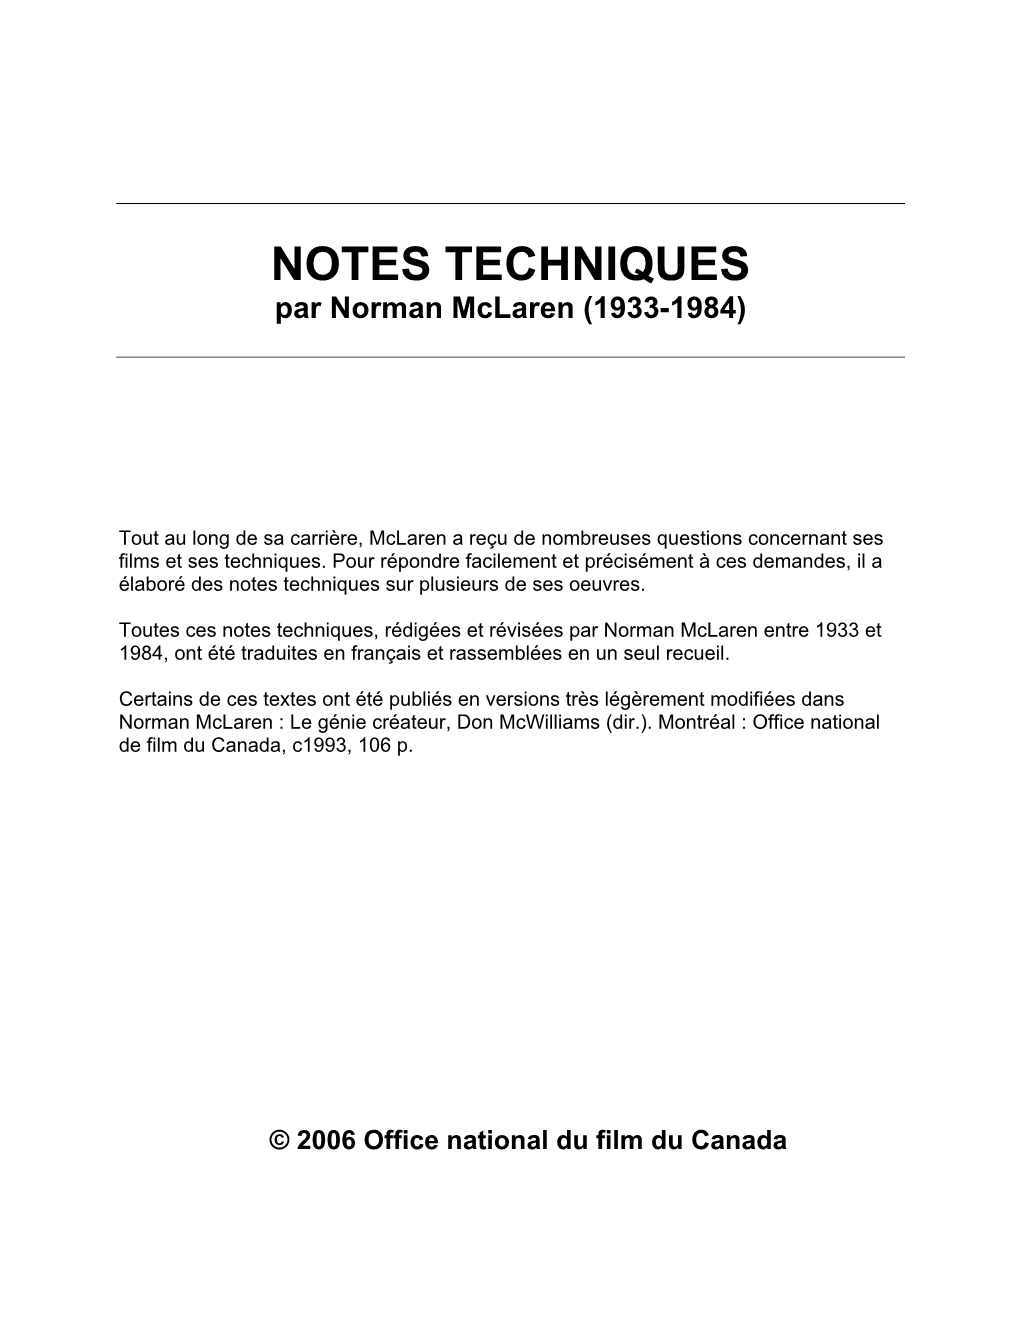 NOTES TECHNIQUES Par Norman Mclaren (1933-1984)